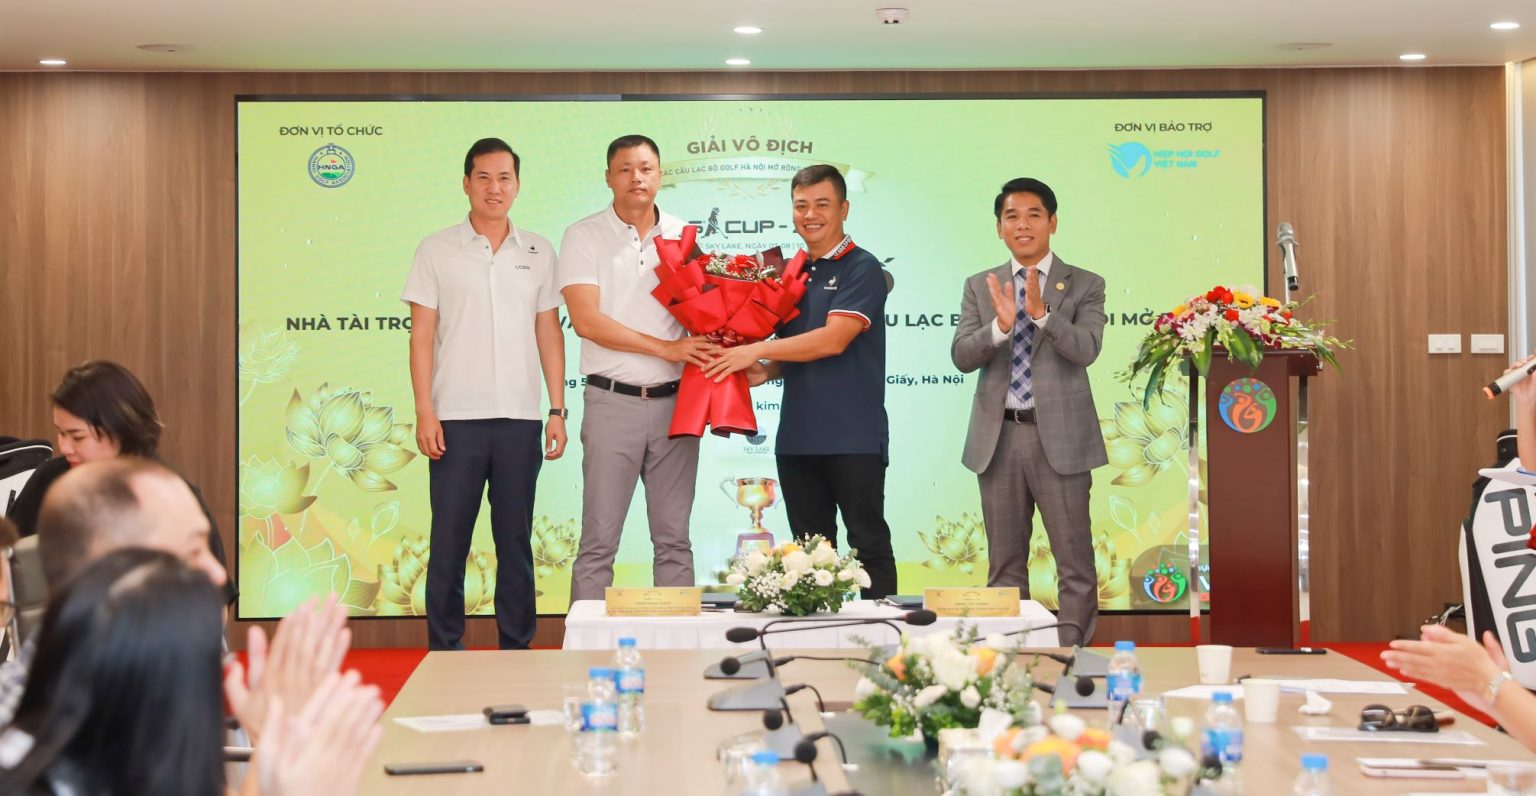 PING trở thành nhà tài trợ Danh xưng giải VĐ CLB Golf Hà Nội Mở rộng 2022